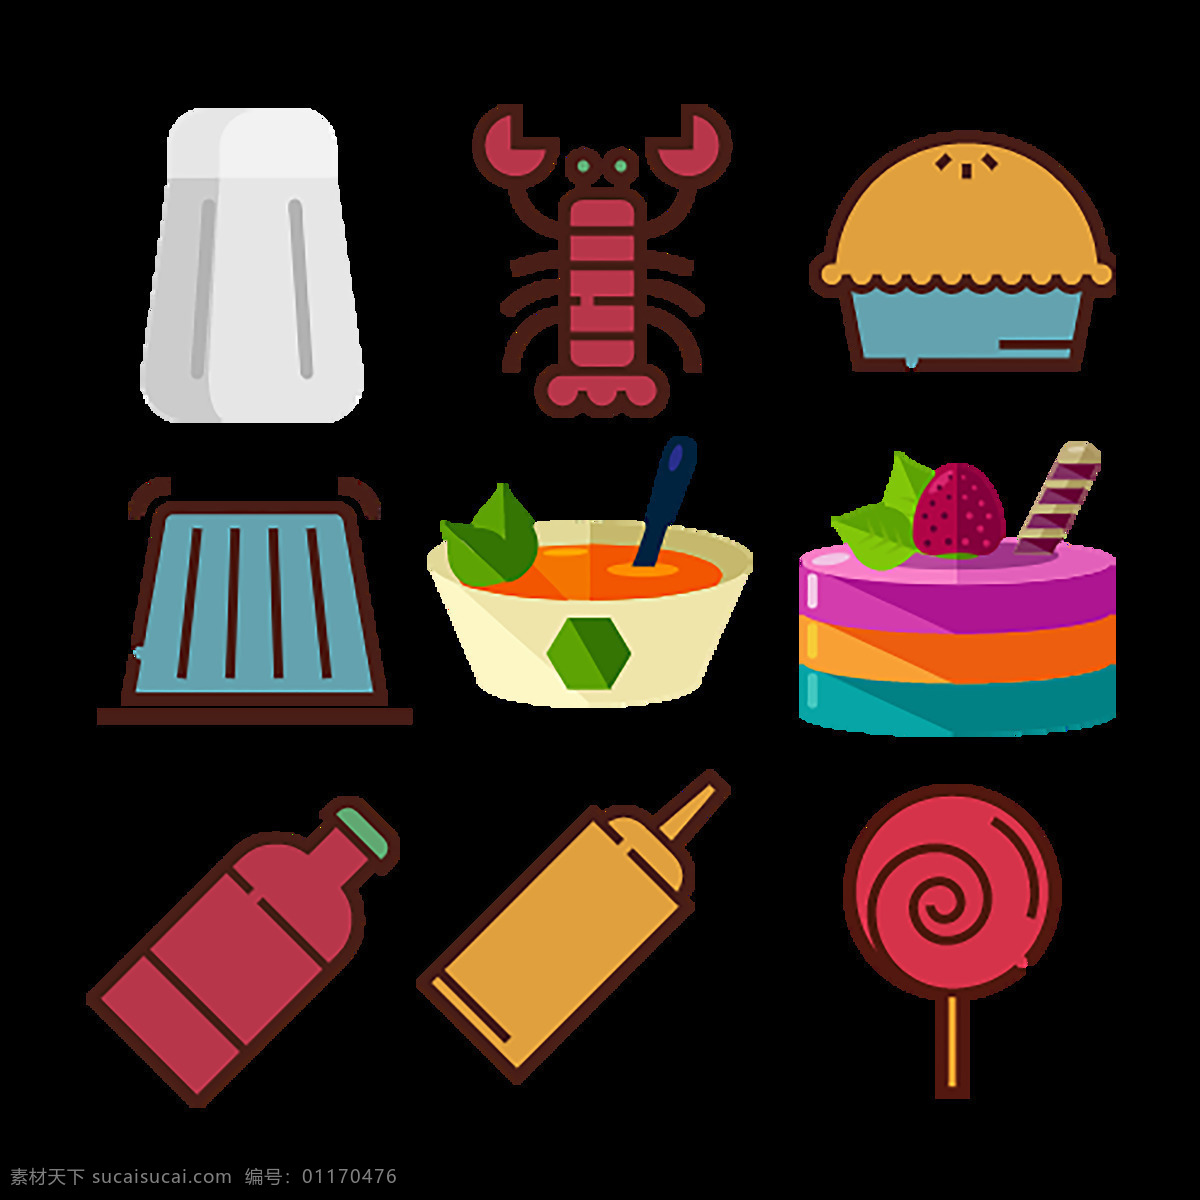 食物 食品 icon 图标素材 卡通图案 图案 汉堡 奶油 蛋糕 糖 螃蟹 矢量图 龙虾 图案素材 扁平化矢量